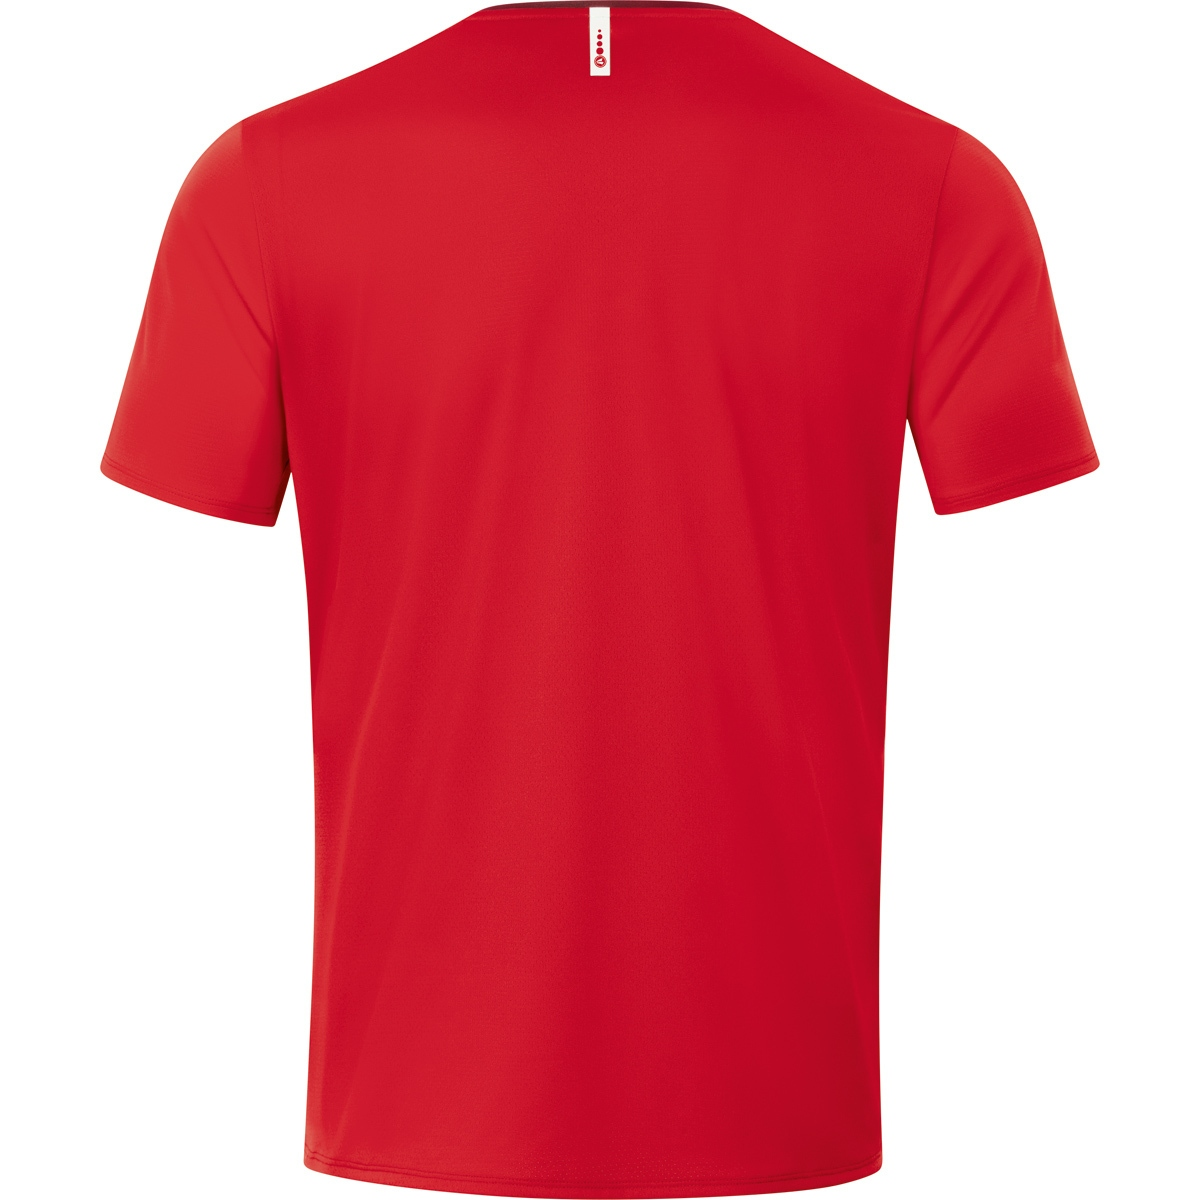 JAKO T-Shirt Champ 3XL, rot/weinrot, 6120 Herren, Gr. 2.0